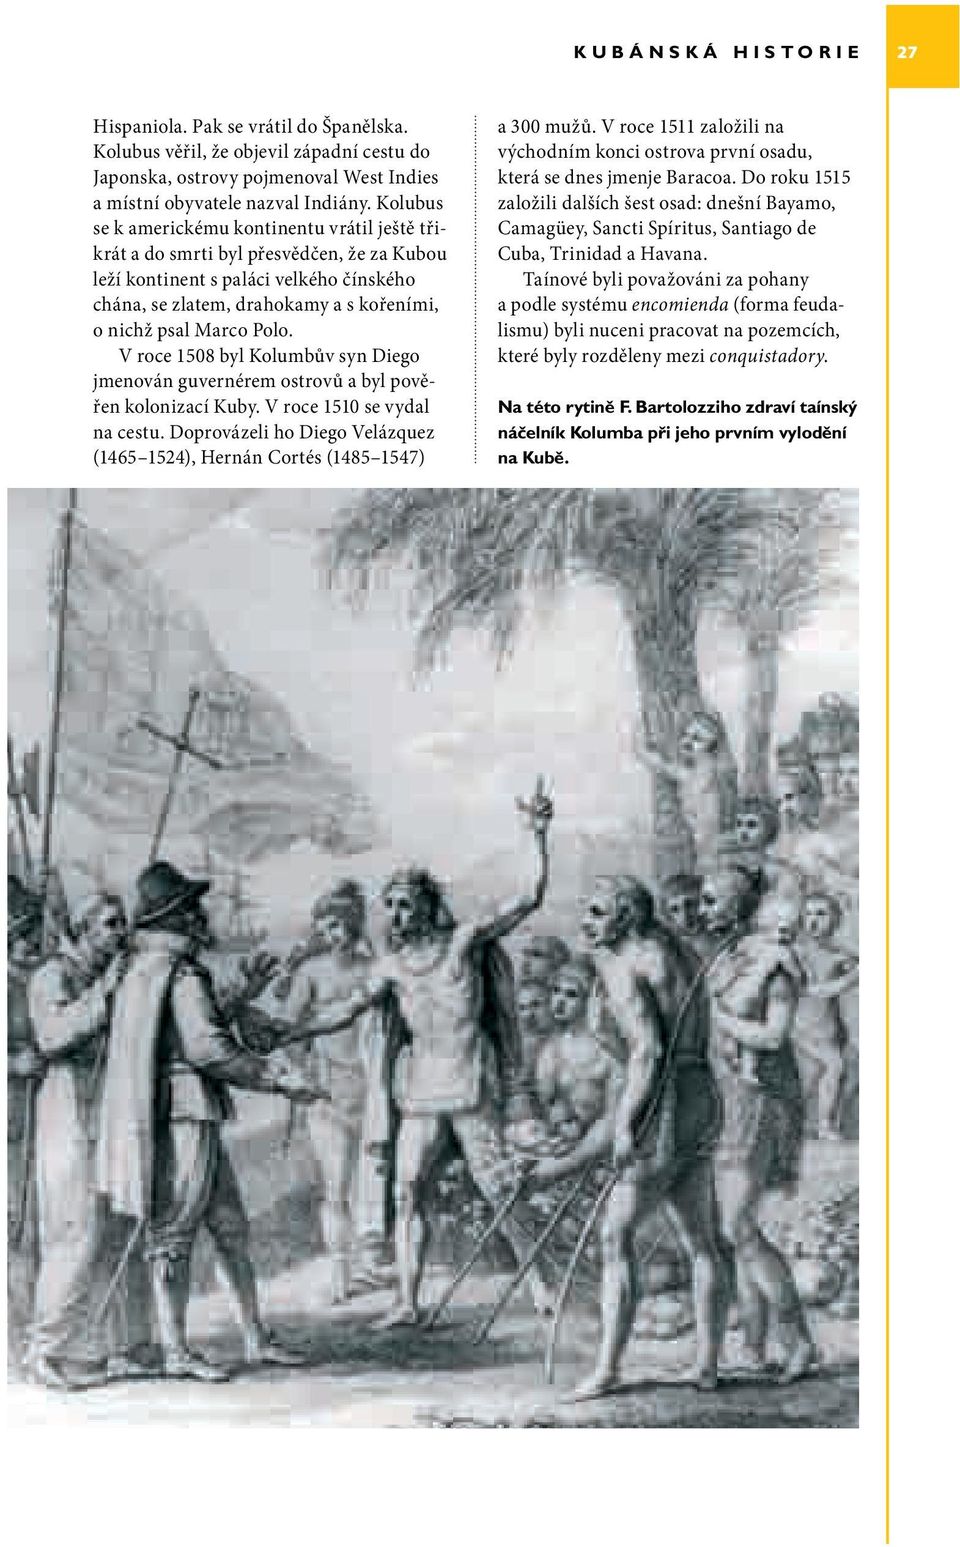 Polo. V roce 1508 byl Kolumbův syn Diego jmenován guvernérem ostrovů a byl pověřen kolonizací Kuby. V roce 1510 se vydal na cestu.